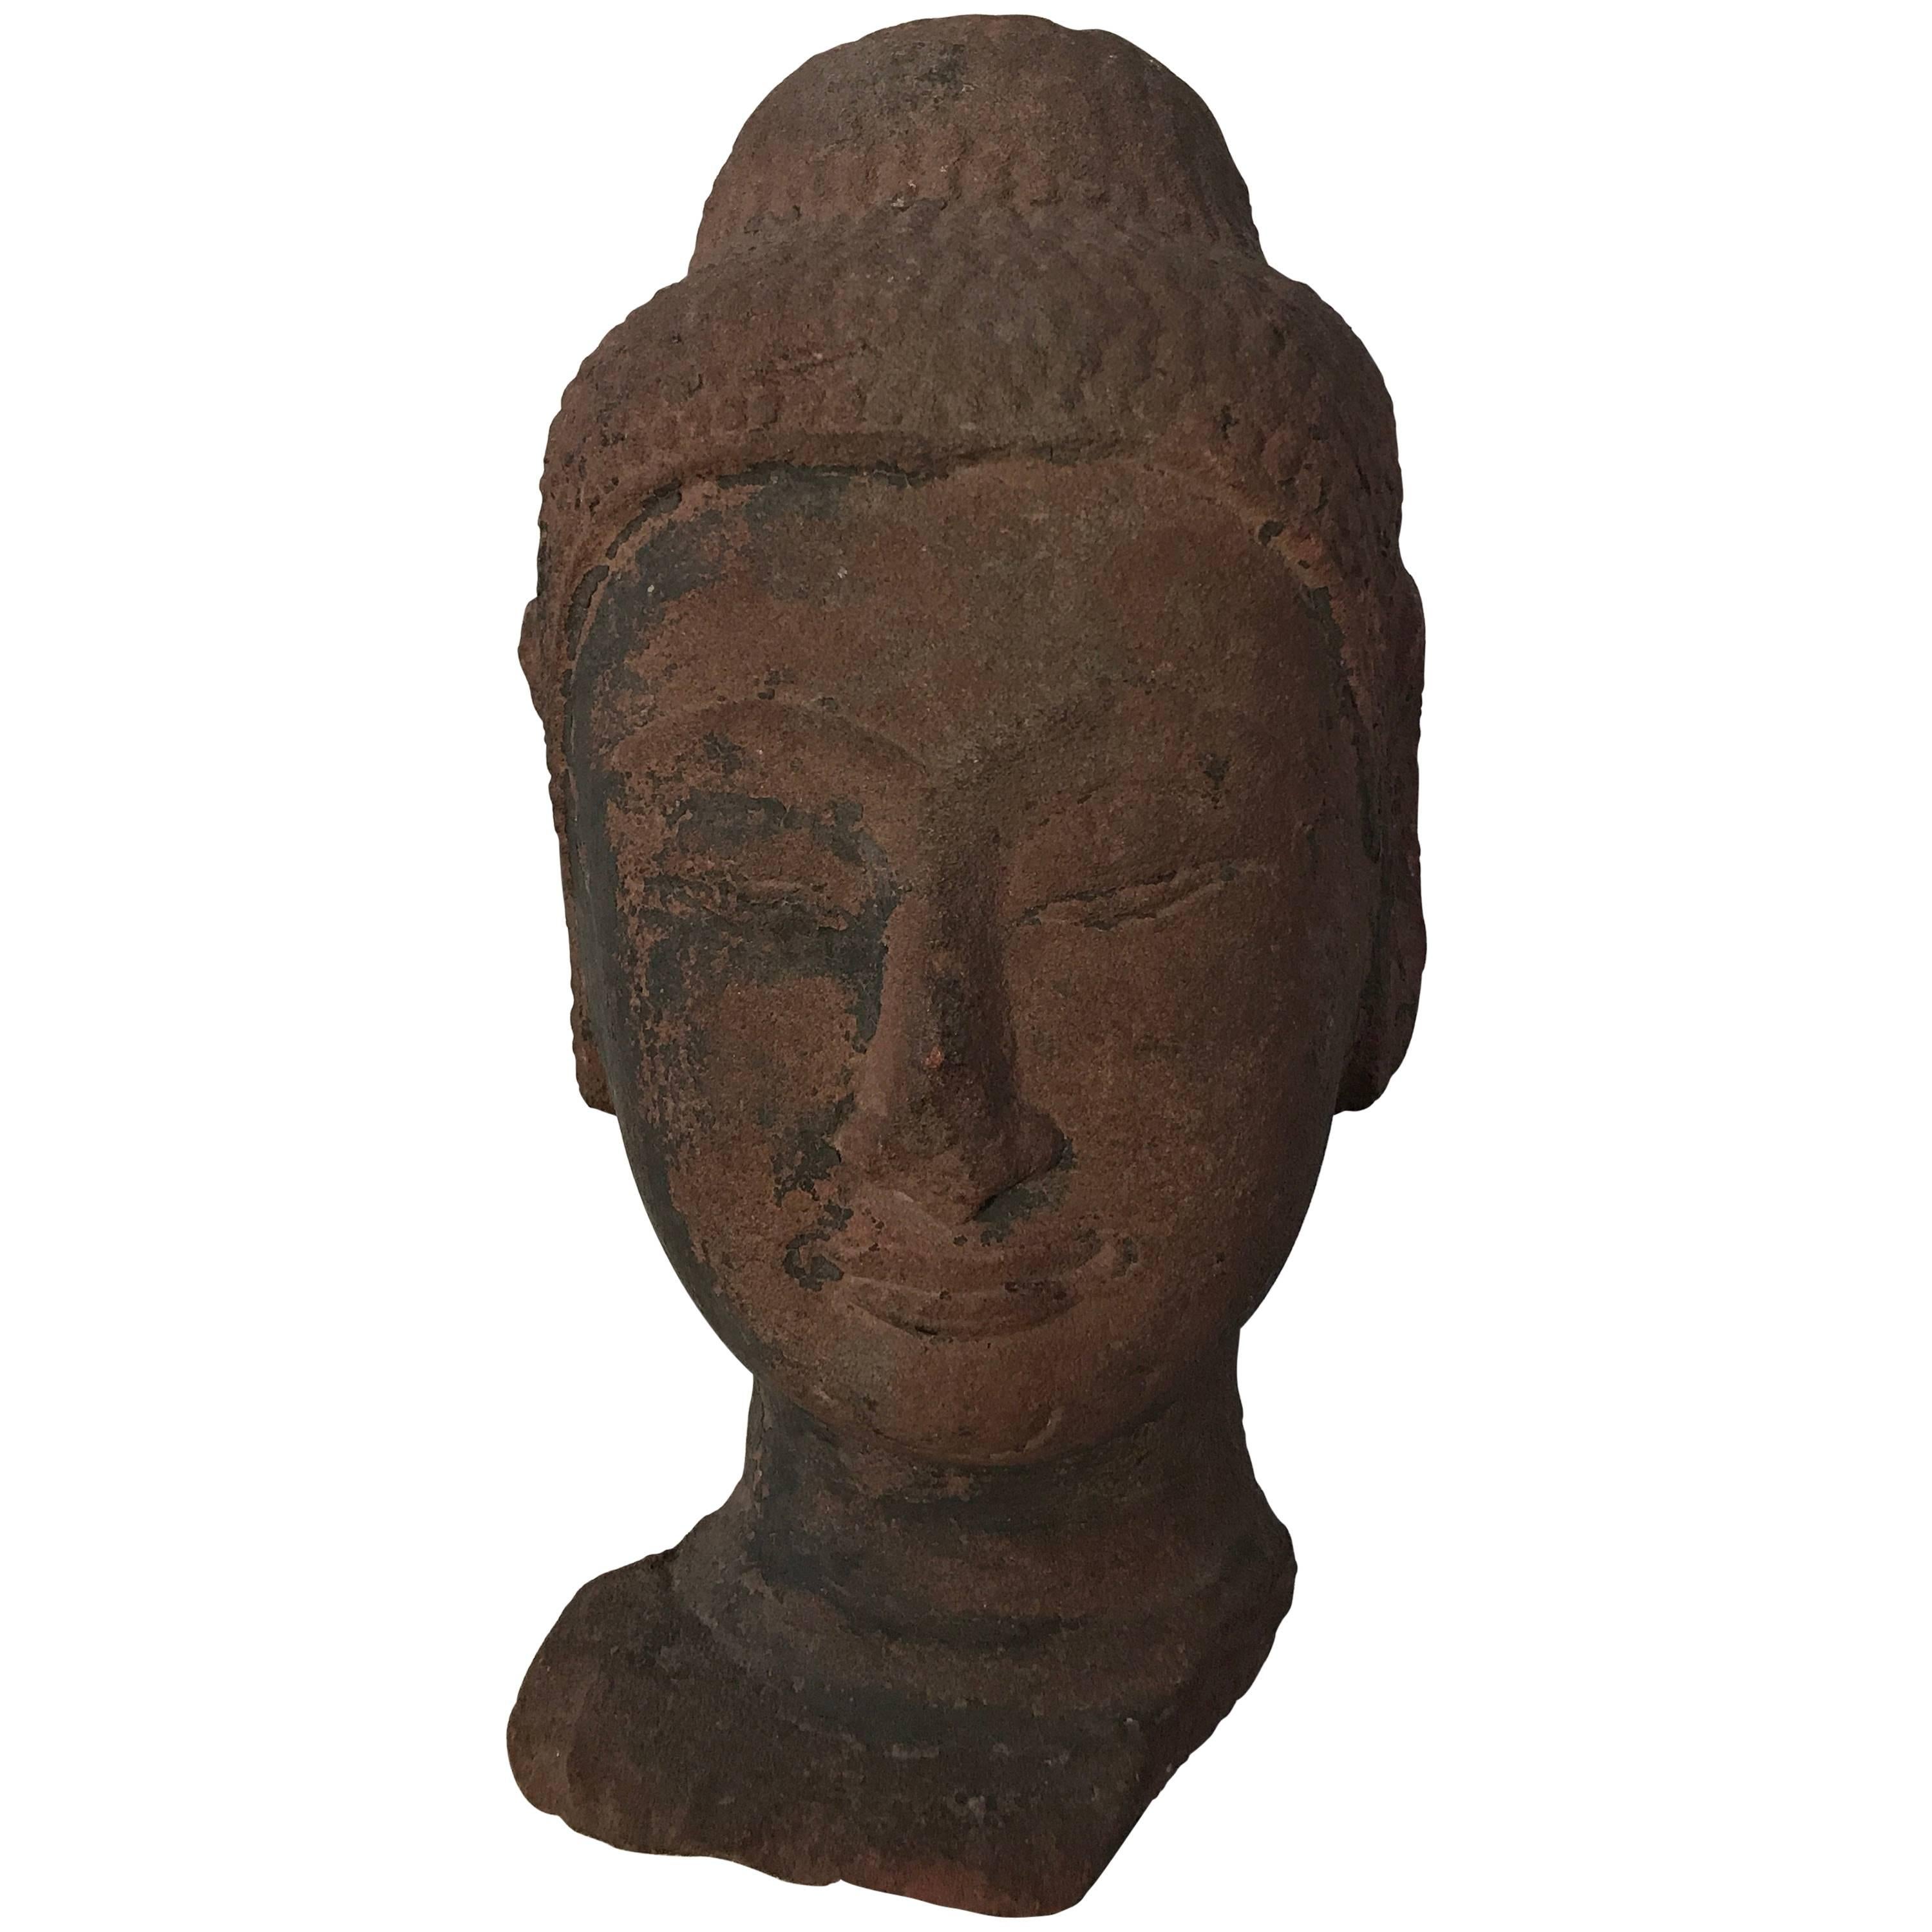 Antike thailändische Sandsteinschnitzerei des Kopfes eines Buddhas, 16,
Ayuthaya-Periode,
feine, handgeschnitzte Bildhauerei des Gesichts,
Spuren links von den polychromen Verkleidungen,
schöne und verwitterte Patina des roten Sandsteins,
sehr